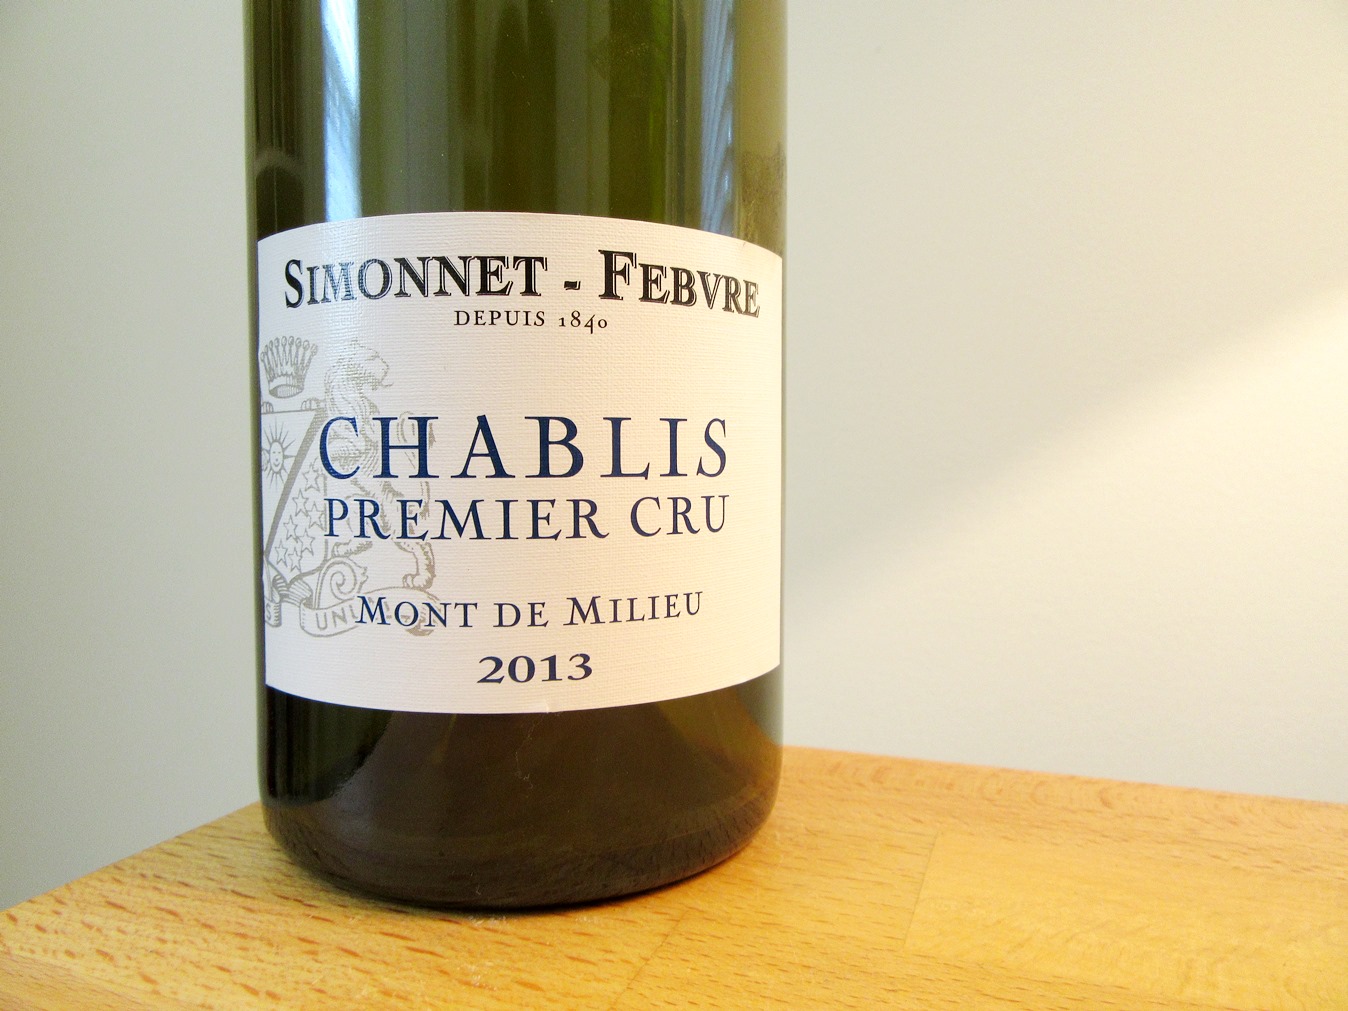 Simonnet-Febvre, Mont de Milieu Chablis Premier Cru 2013, France, Wine Casual